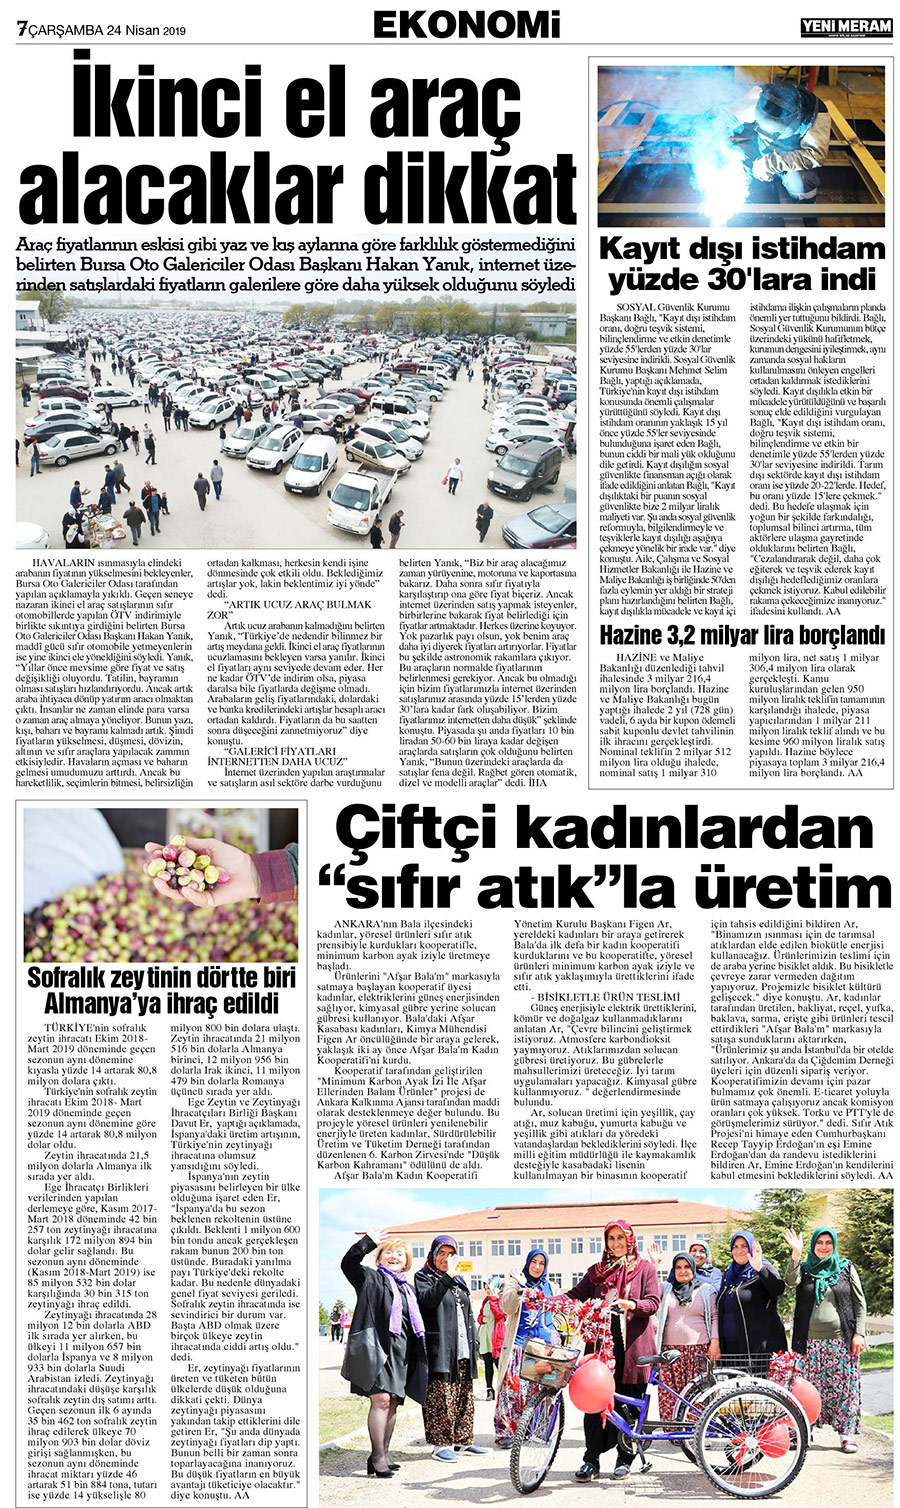 24 Nisan 2019 Yeni Meram Gazetesi